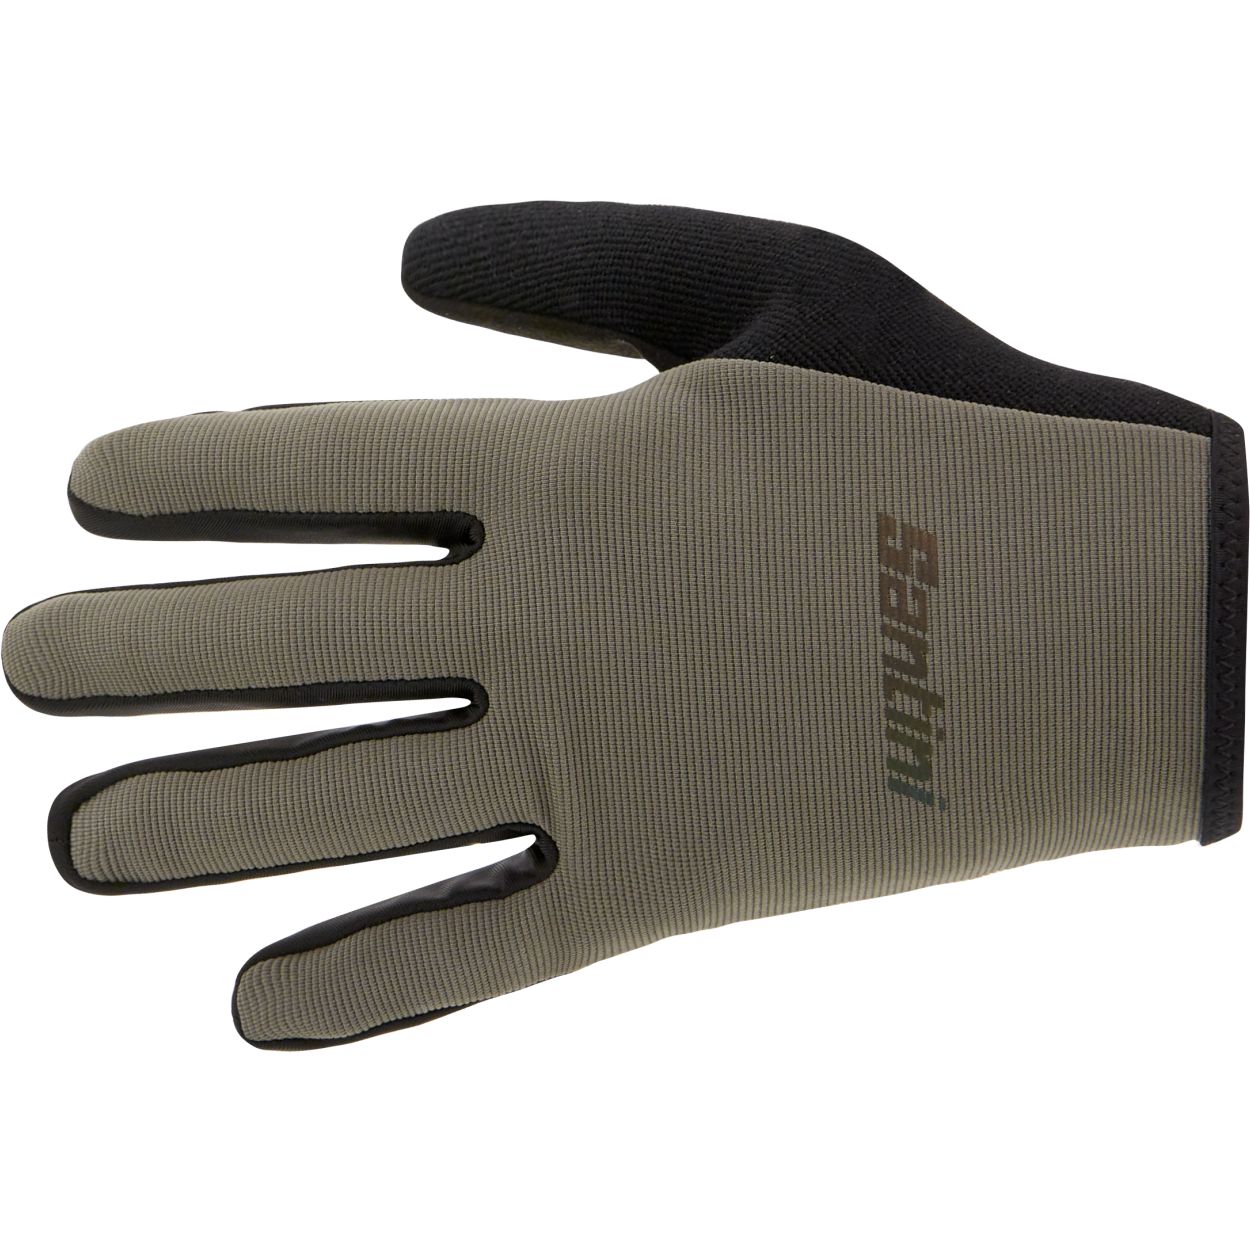 Productfoto van Santini MTB Handschoenen 0M593CLMTB - grijs GR